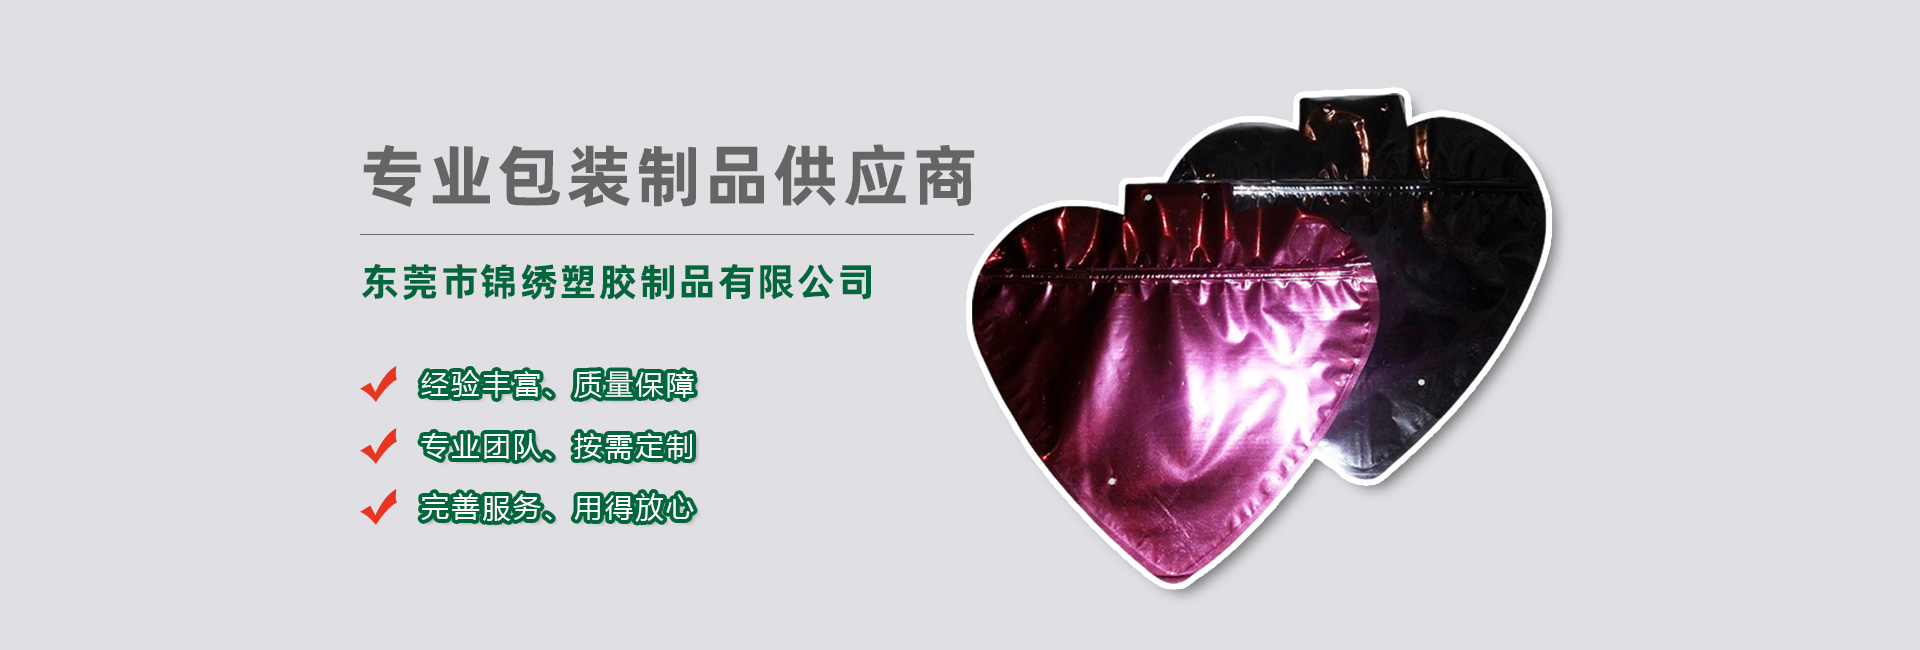 辽宁食品袋banner